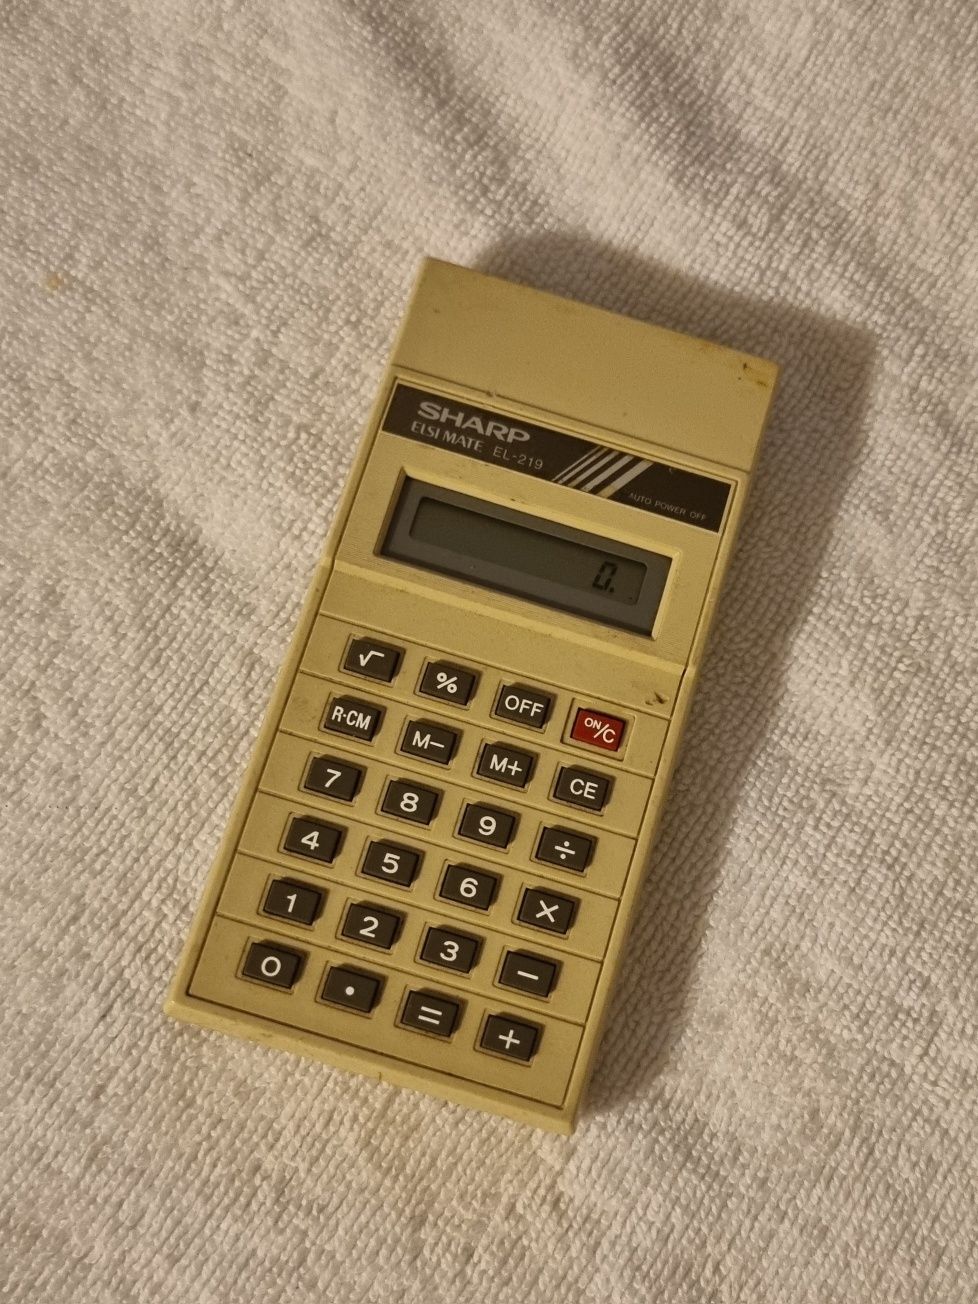 Calculadora Sharp antiga